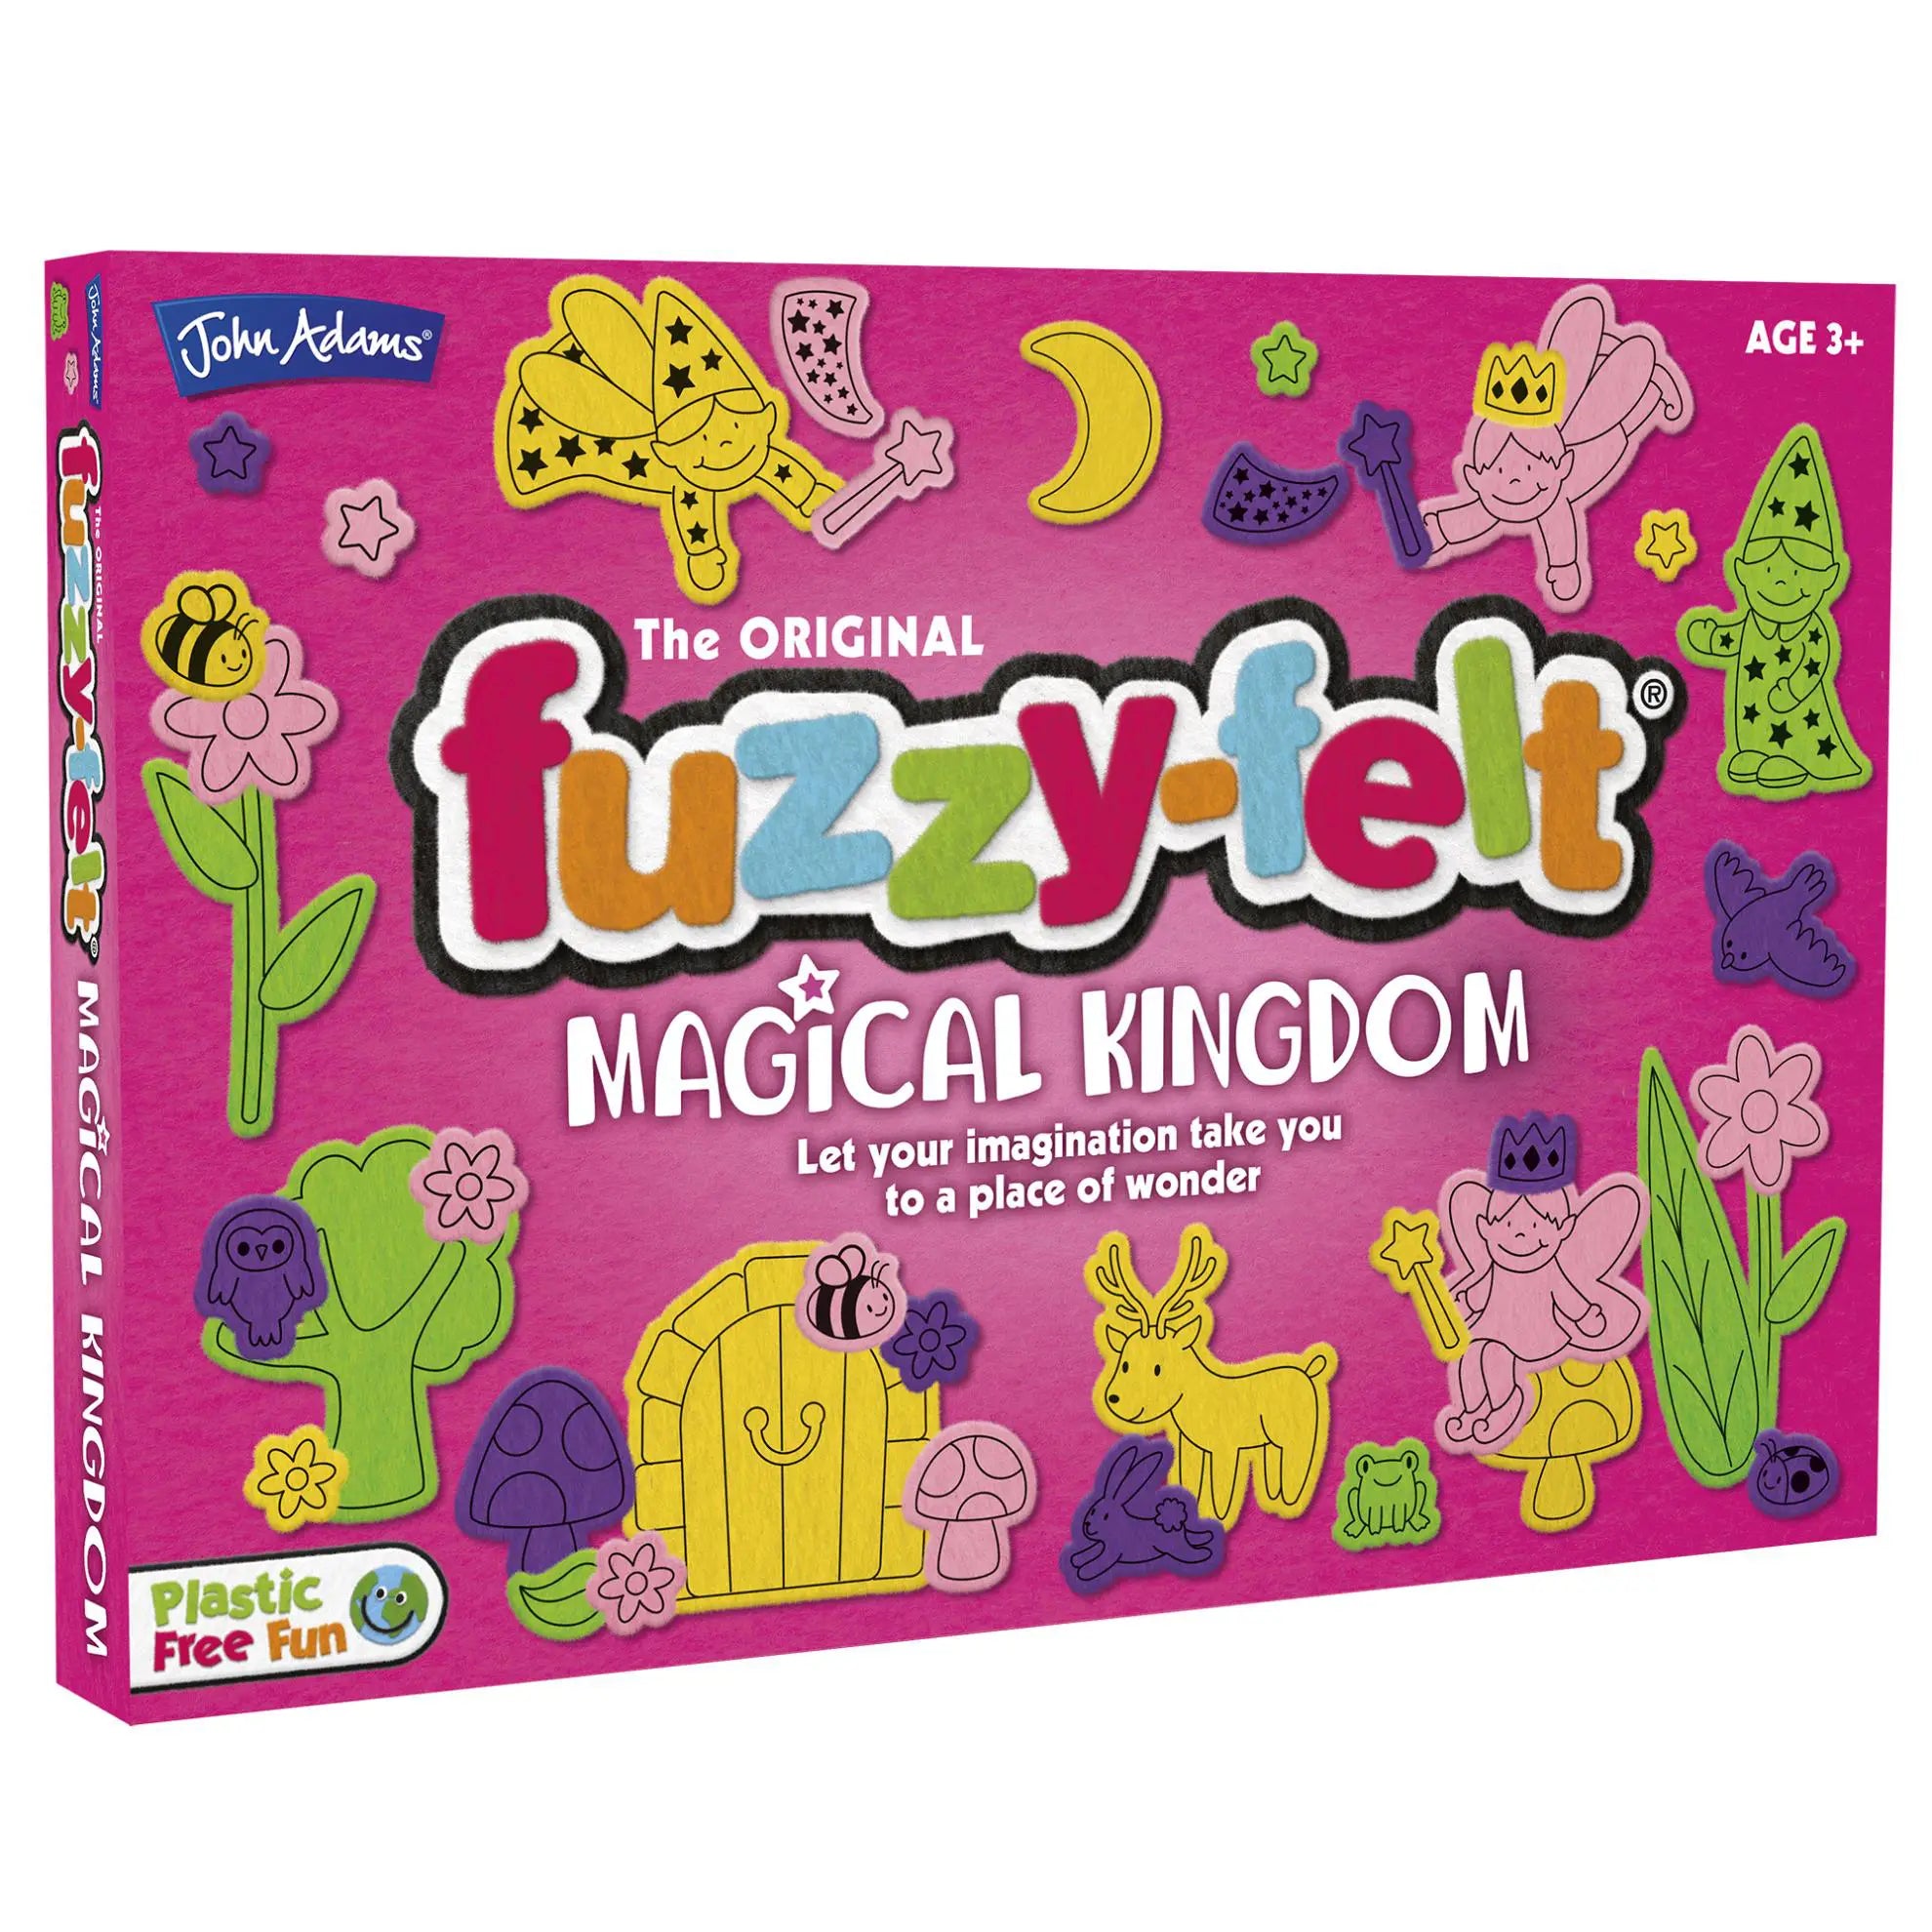 Fuzzy-Felt Magical Kingdom